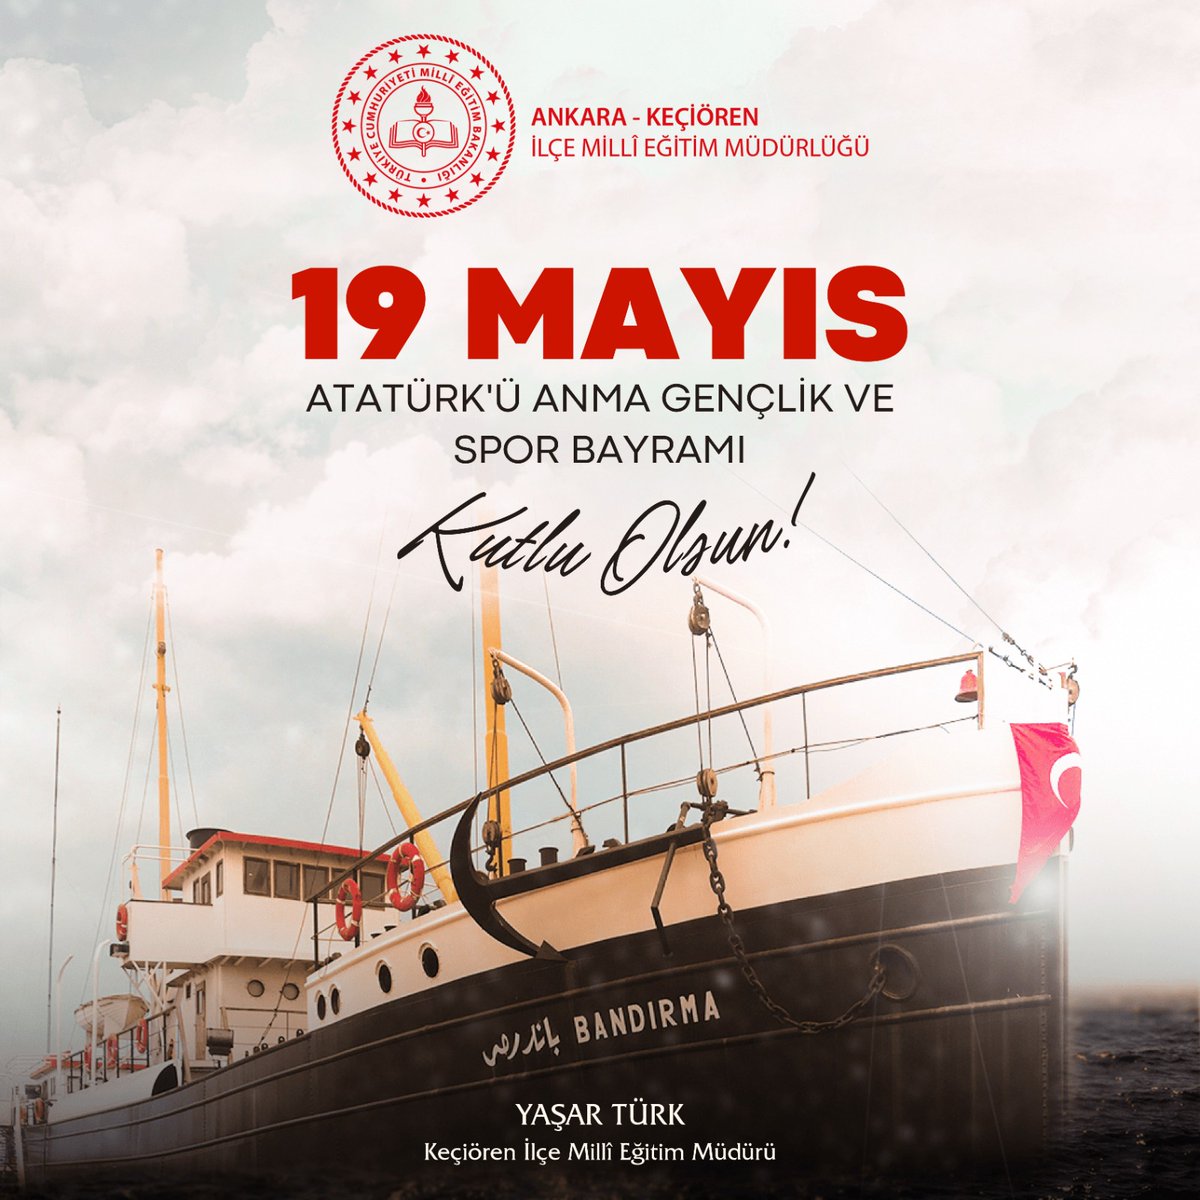 Mustafa Kemal’in Samsun’da tutuşturduğu bağımsızlık meşalesinin Anadolu’da elden ele, gönülden gönüle dolaşmasının 105. yıl dönümünde 19 Mayıs Atatürk’ü Anma Gençlik ve Spor Bayramımız kutlu olsun 🇹🇷🇹🇷🇹🇷 @Yasarturk6155 @kocakysr @MemAnkara @tcmeb